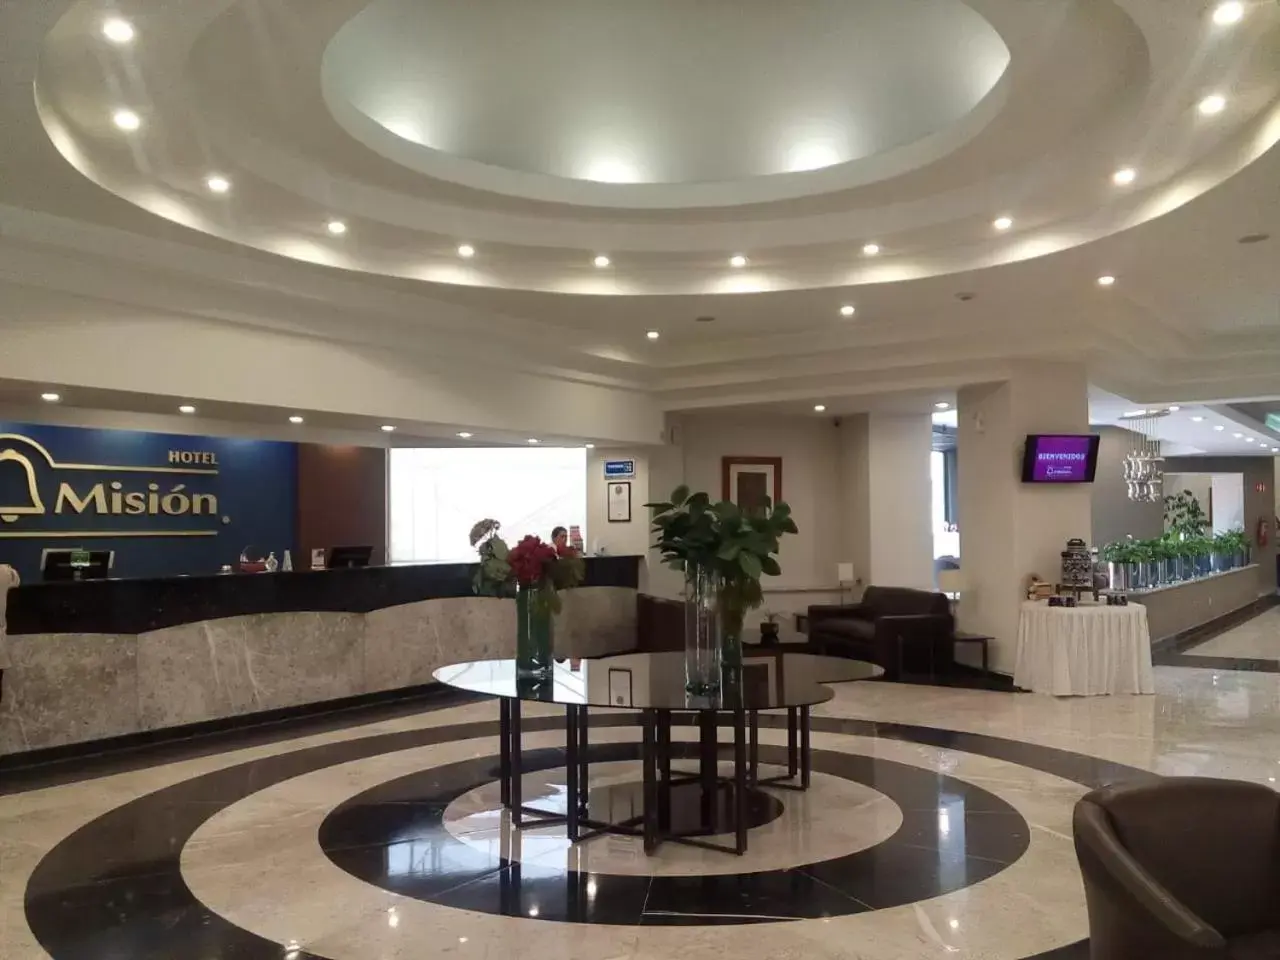 Lobby or reception, Lobby/Reception in Mision Toreo Centro de Convenciones